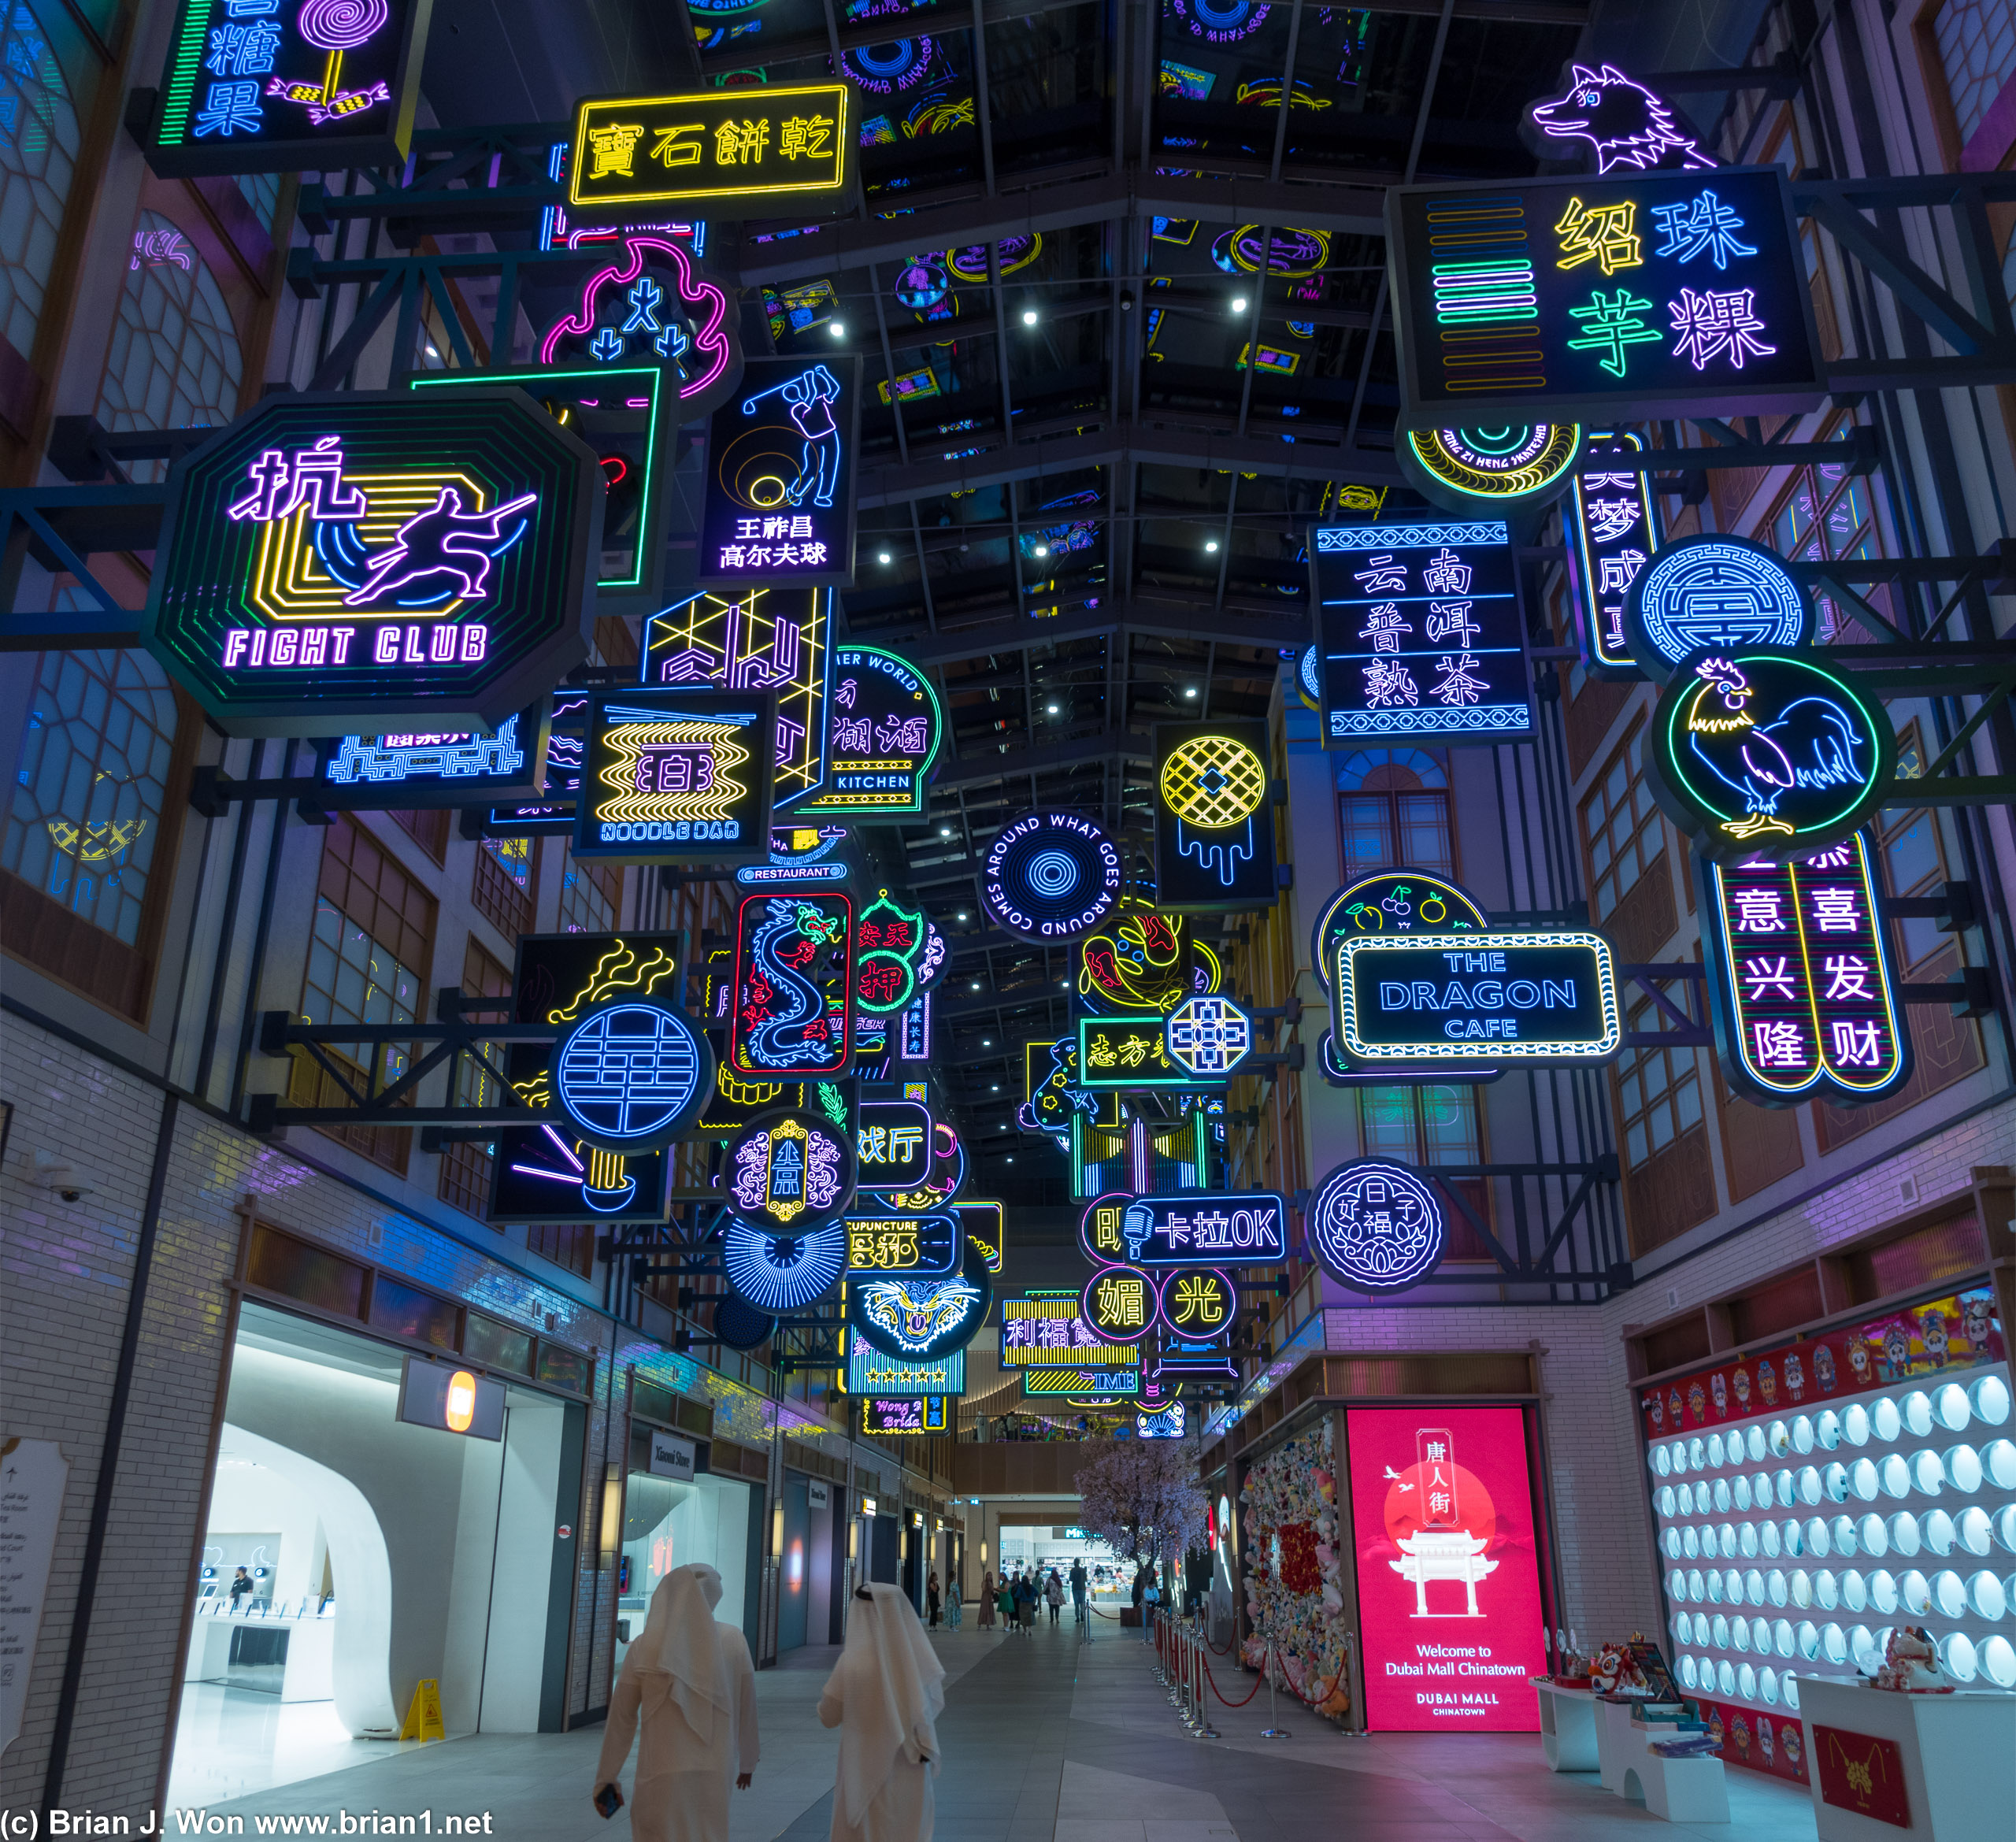 Neon lights emulating HK?